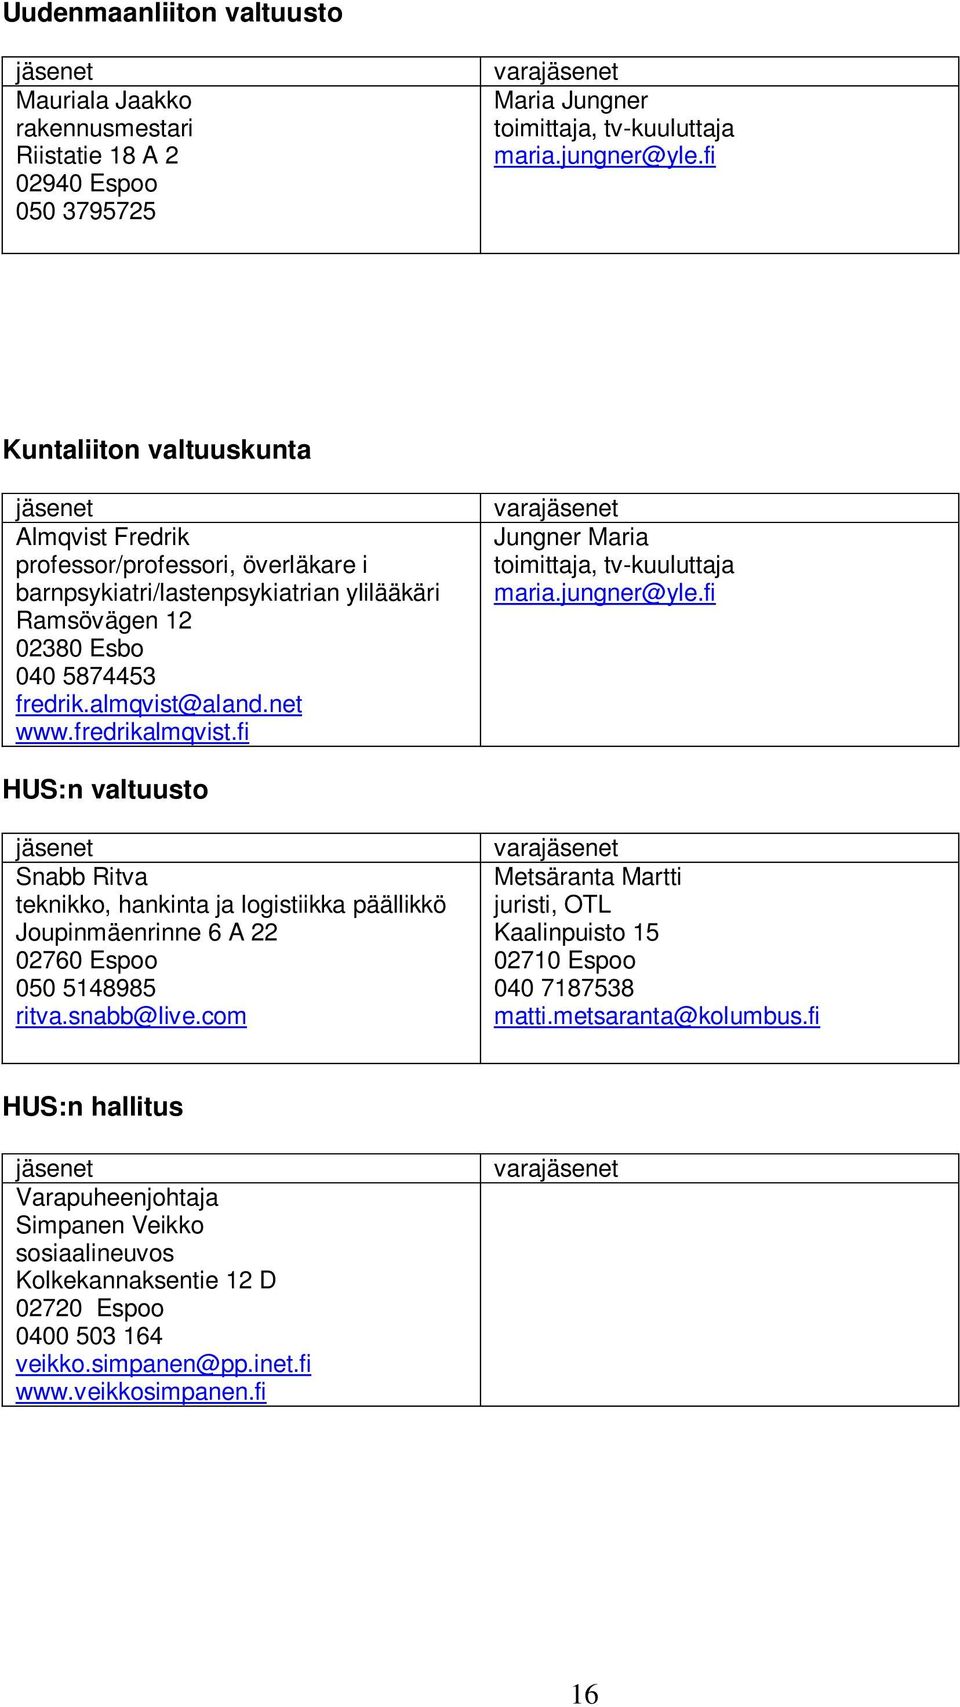 fredrikalmqvist.fi vara Jungner Maria toimittaja, tv-kuuluttaja maria.jungner@yle.fi HUS:n valtuusto Snabb Ritva teknikko, hankinta ja logistiikka päällikkö Joupinmäenrinne 6 A 22 050 5148985 ritva.